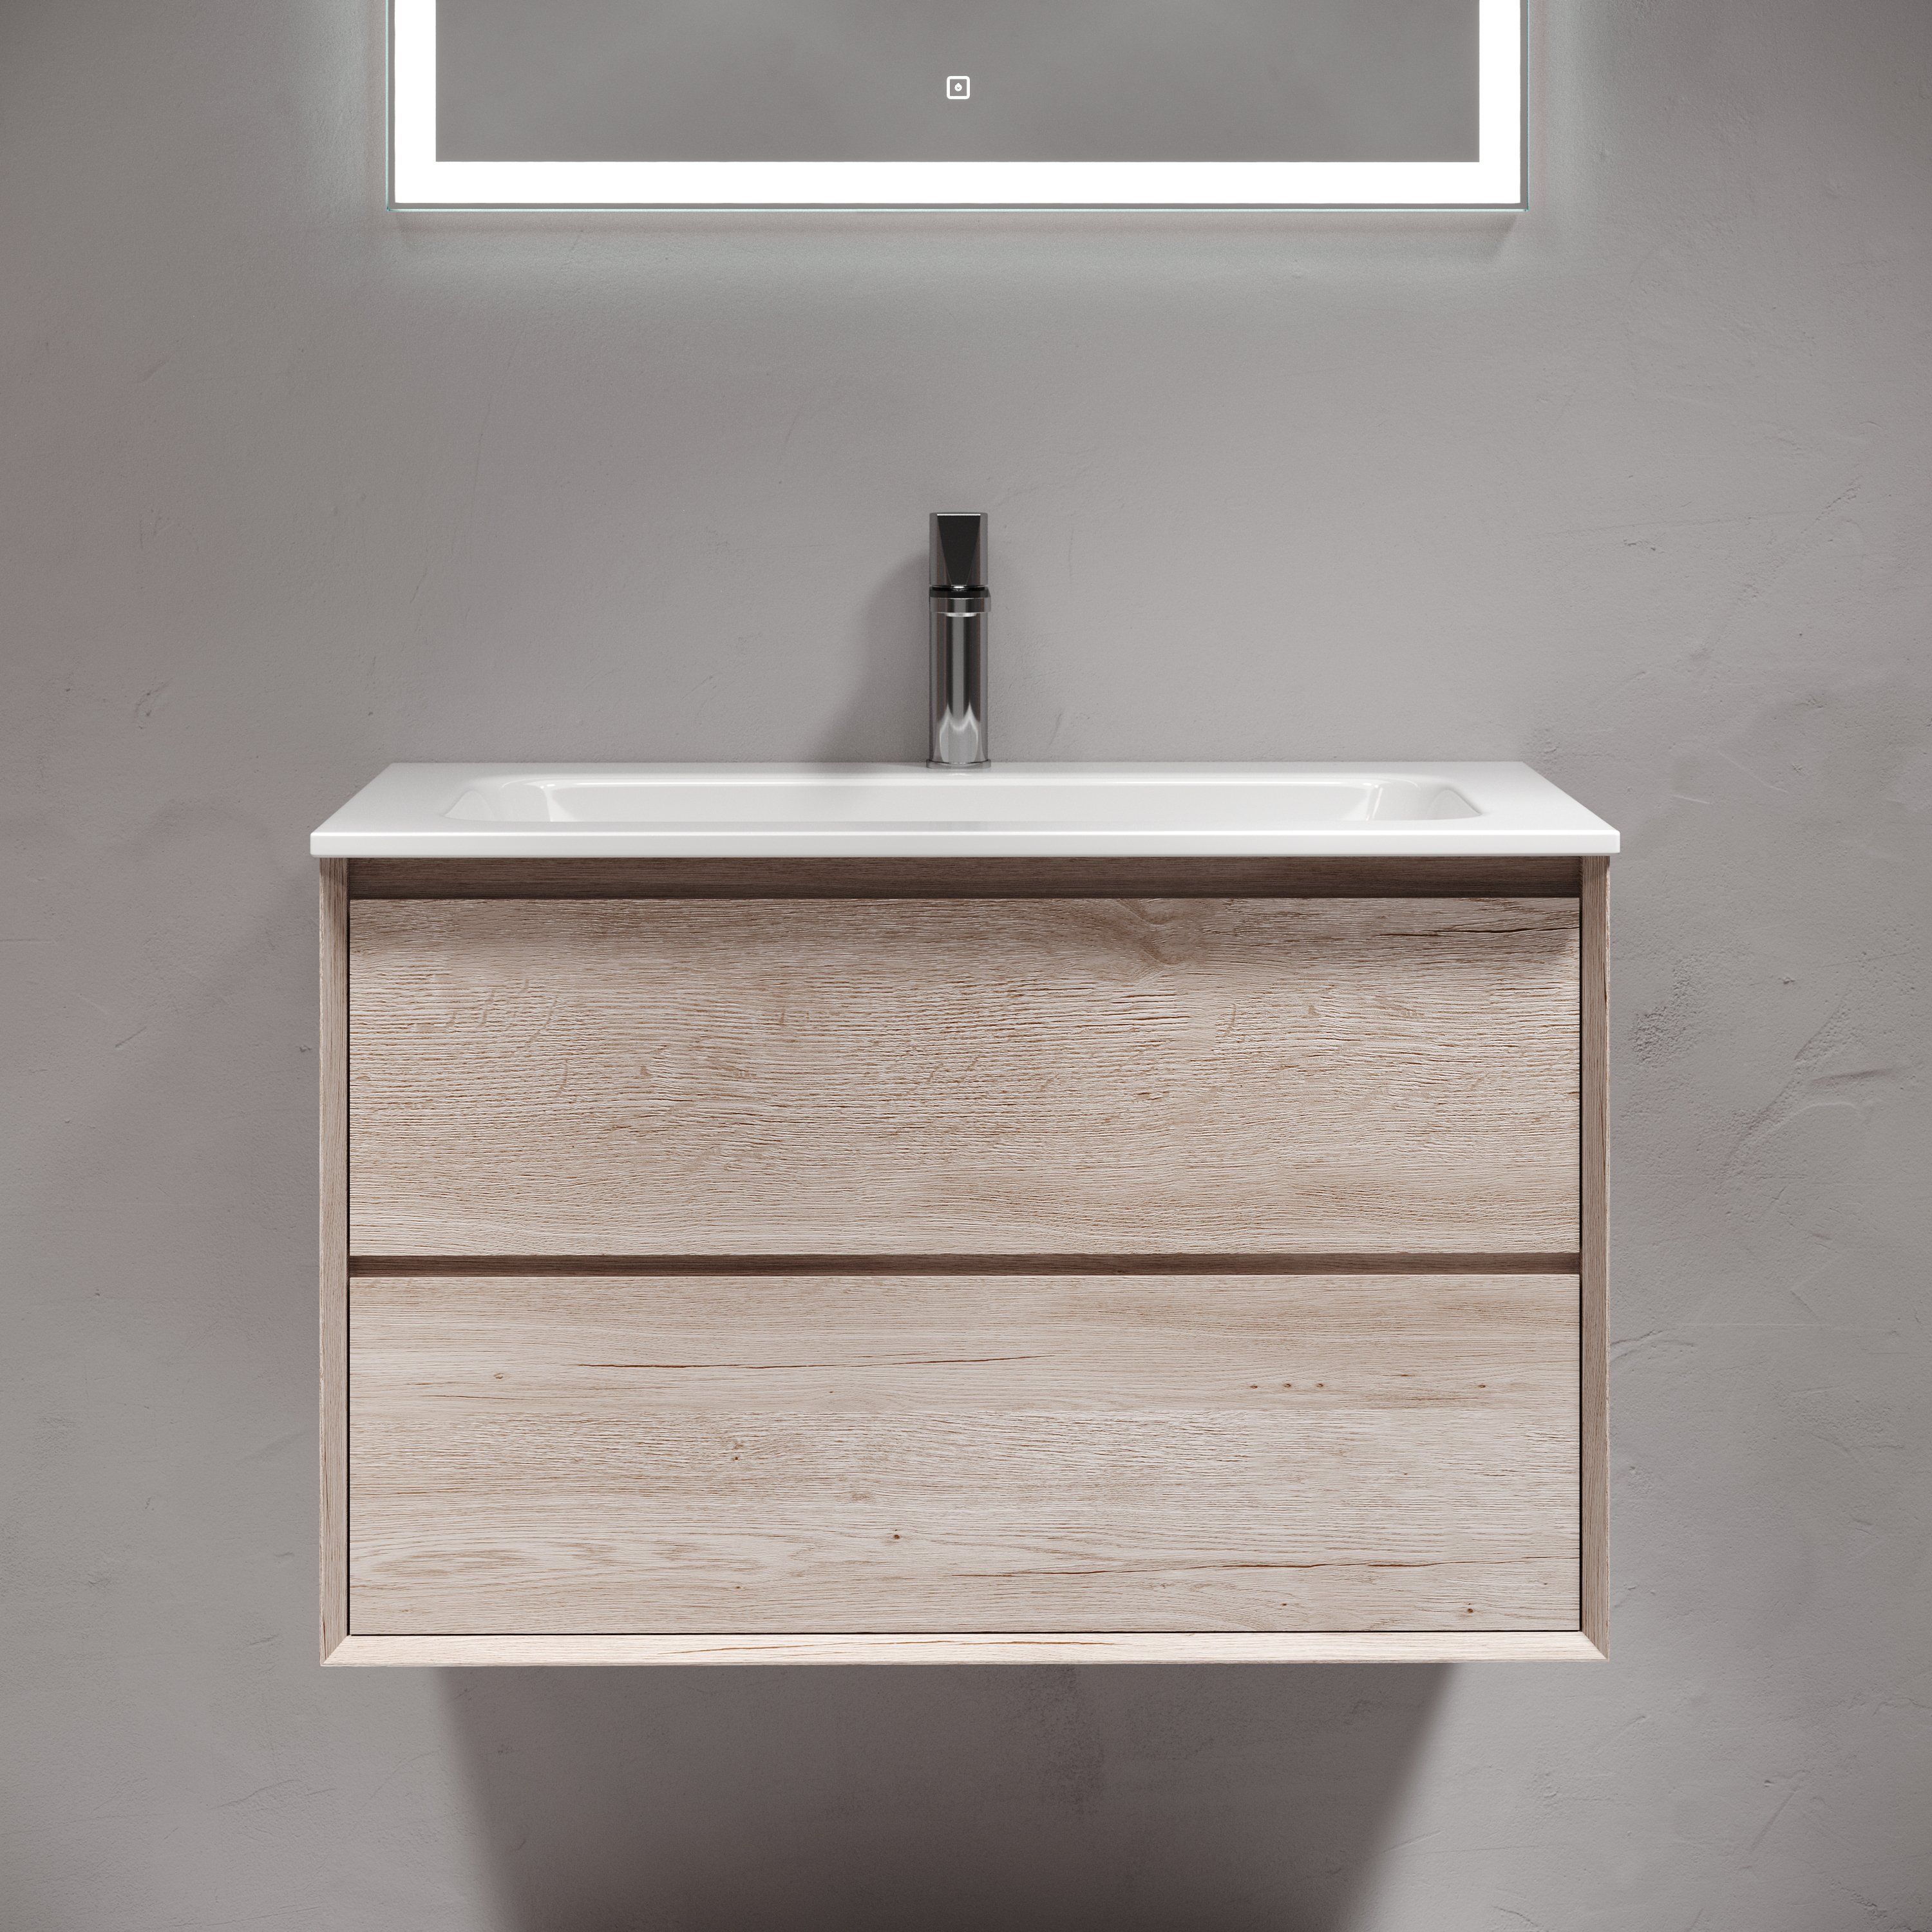 Мебель для ванной комнаты Sancos Marmi 2.0 80 см дуб галифакс натуральный, цвет коричневый